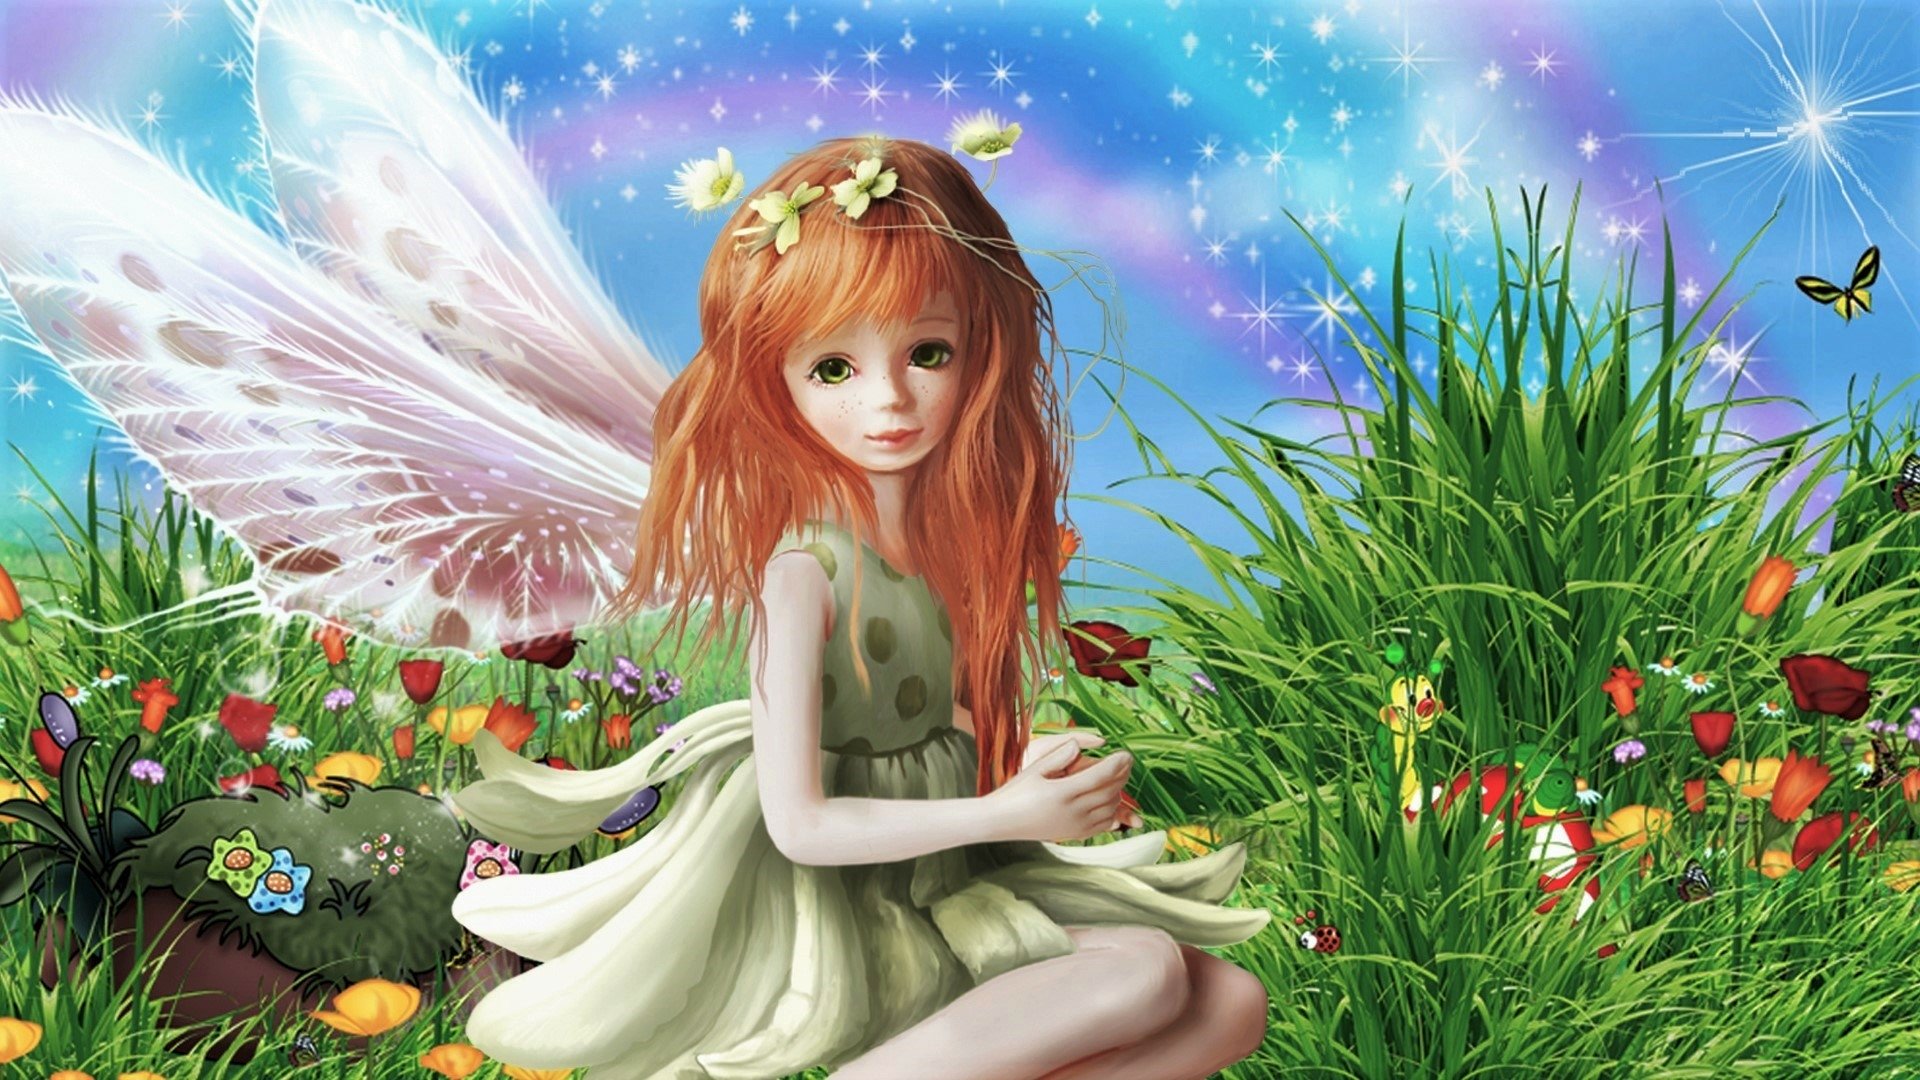 Download Wings Flower Grass Little Girl Fantasy Fairy  HD Wallpaper